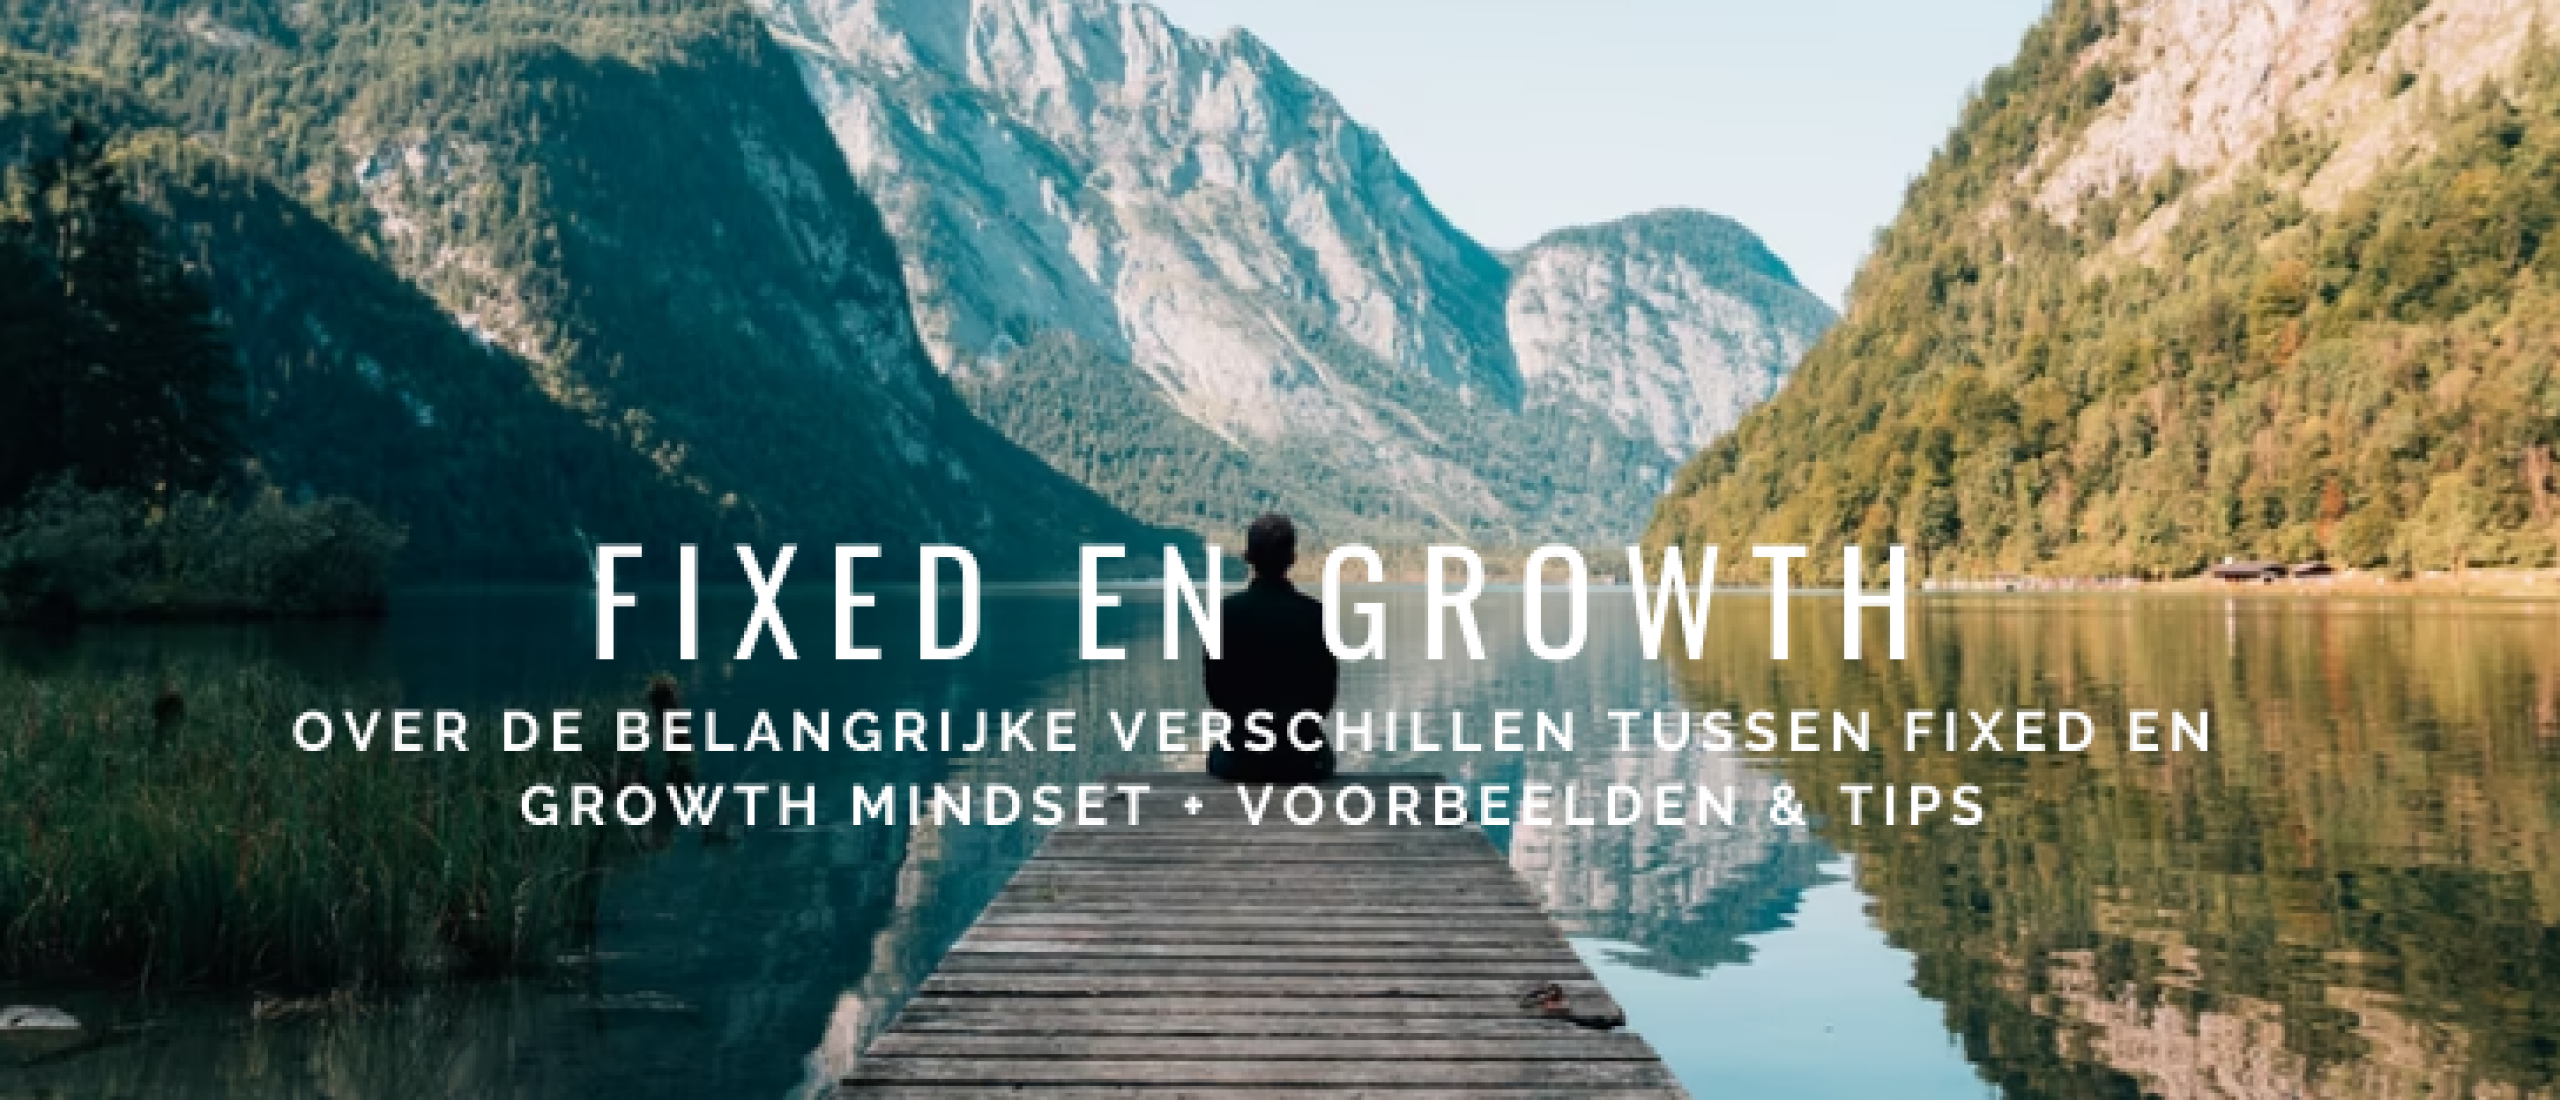 Fixed en Growth Mindset Verschillen: Voorbeelden en Tips